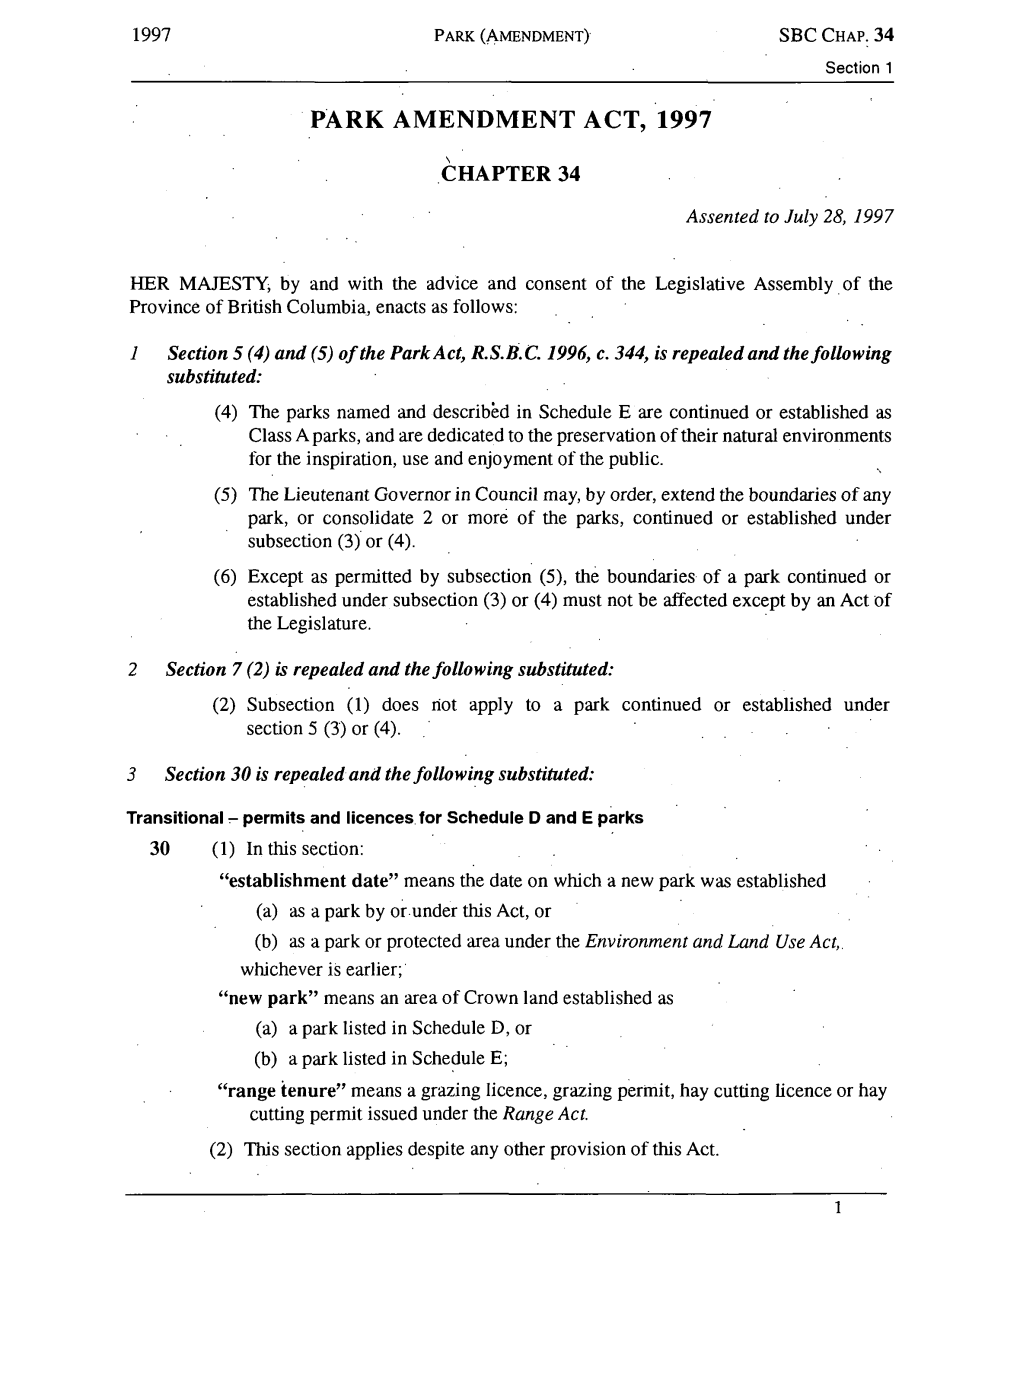 Park Amendment Act, 1997